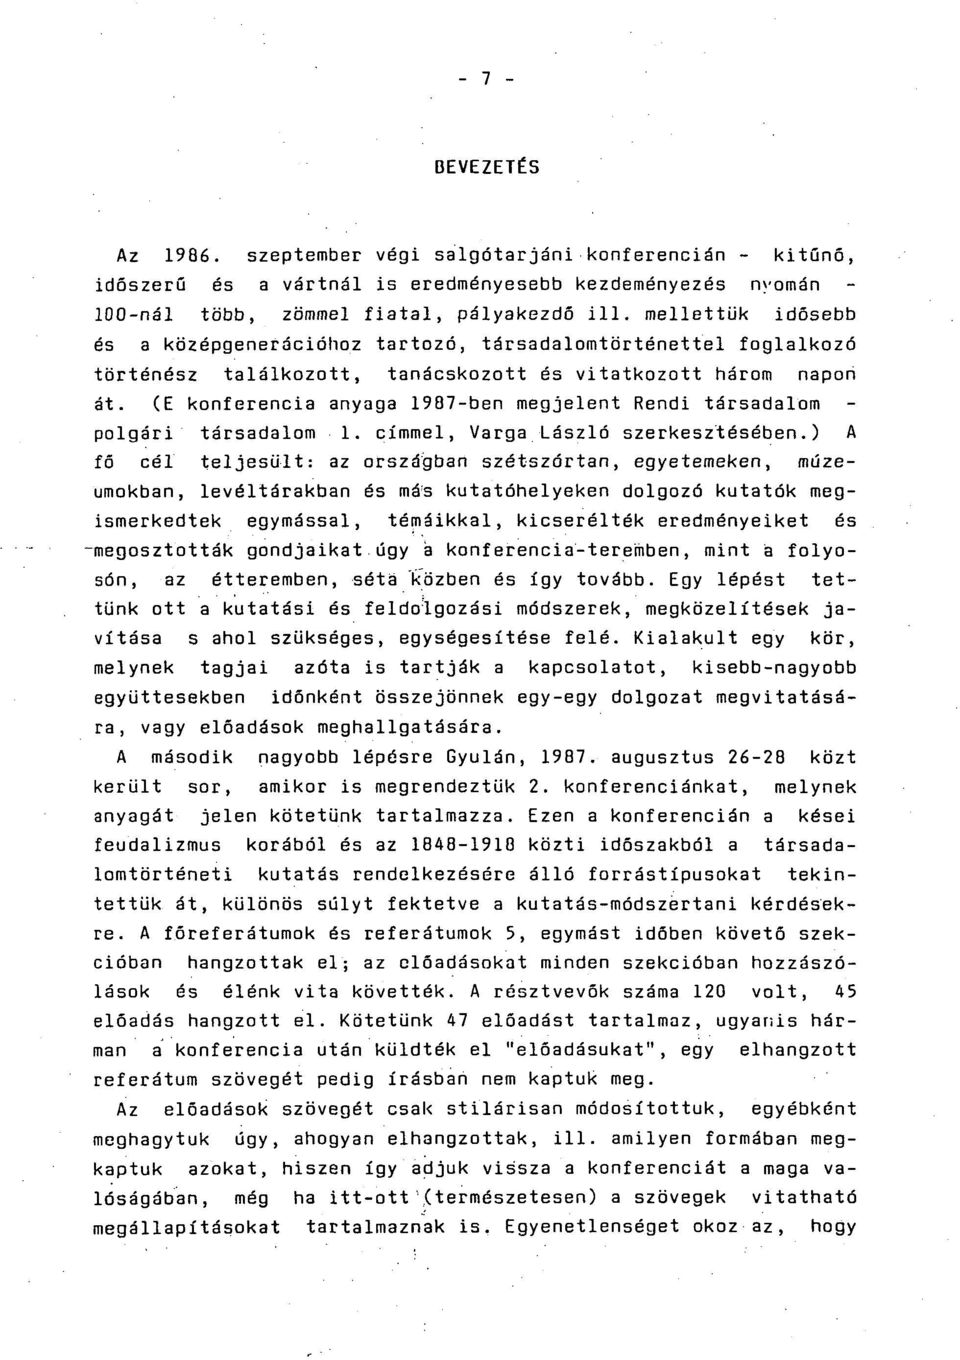 (E konferencia anyaga 1987-ben megjelent Rendi társadalom polgári társadalom 1. címmel, Varga László szerkesztésében.